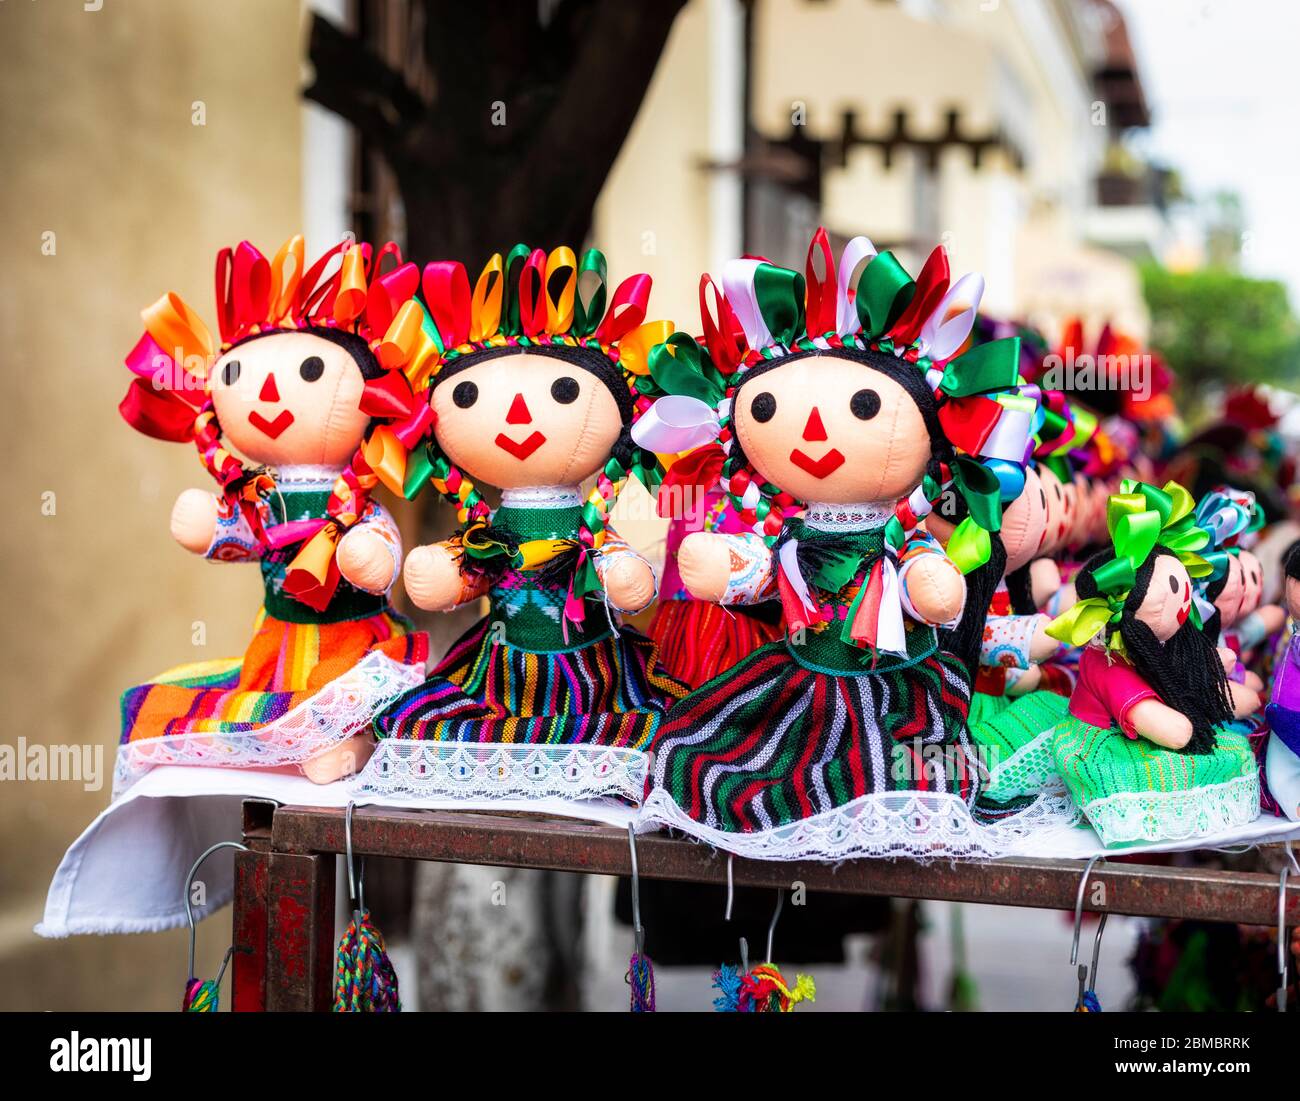 Traditionell gekleidete, handgenähte Puppen auf dem Straßenmarkt, Tlaquepaque, Jalisco, Mexiko. Stockfoto